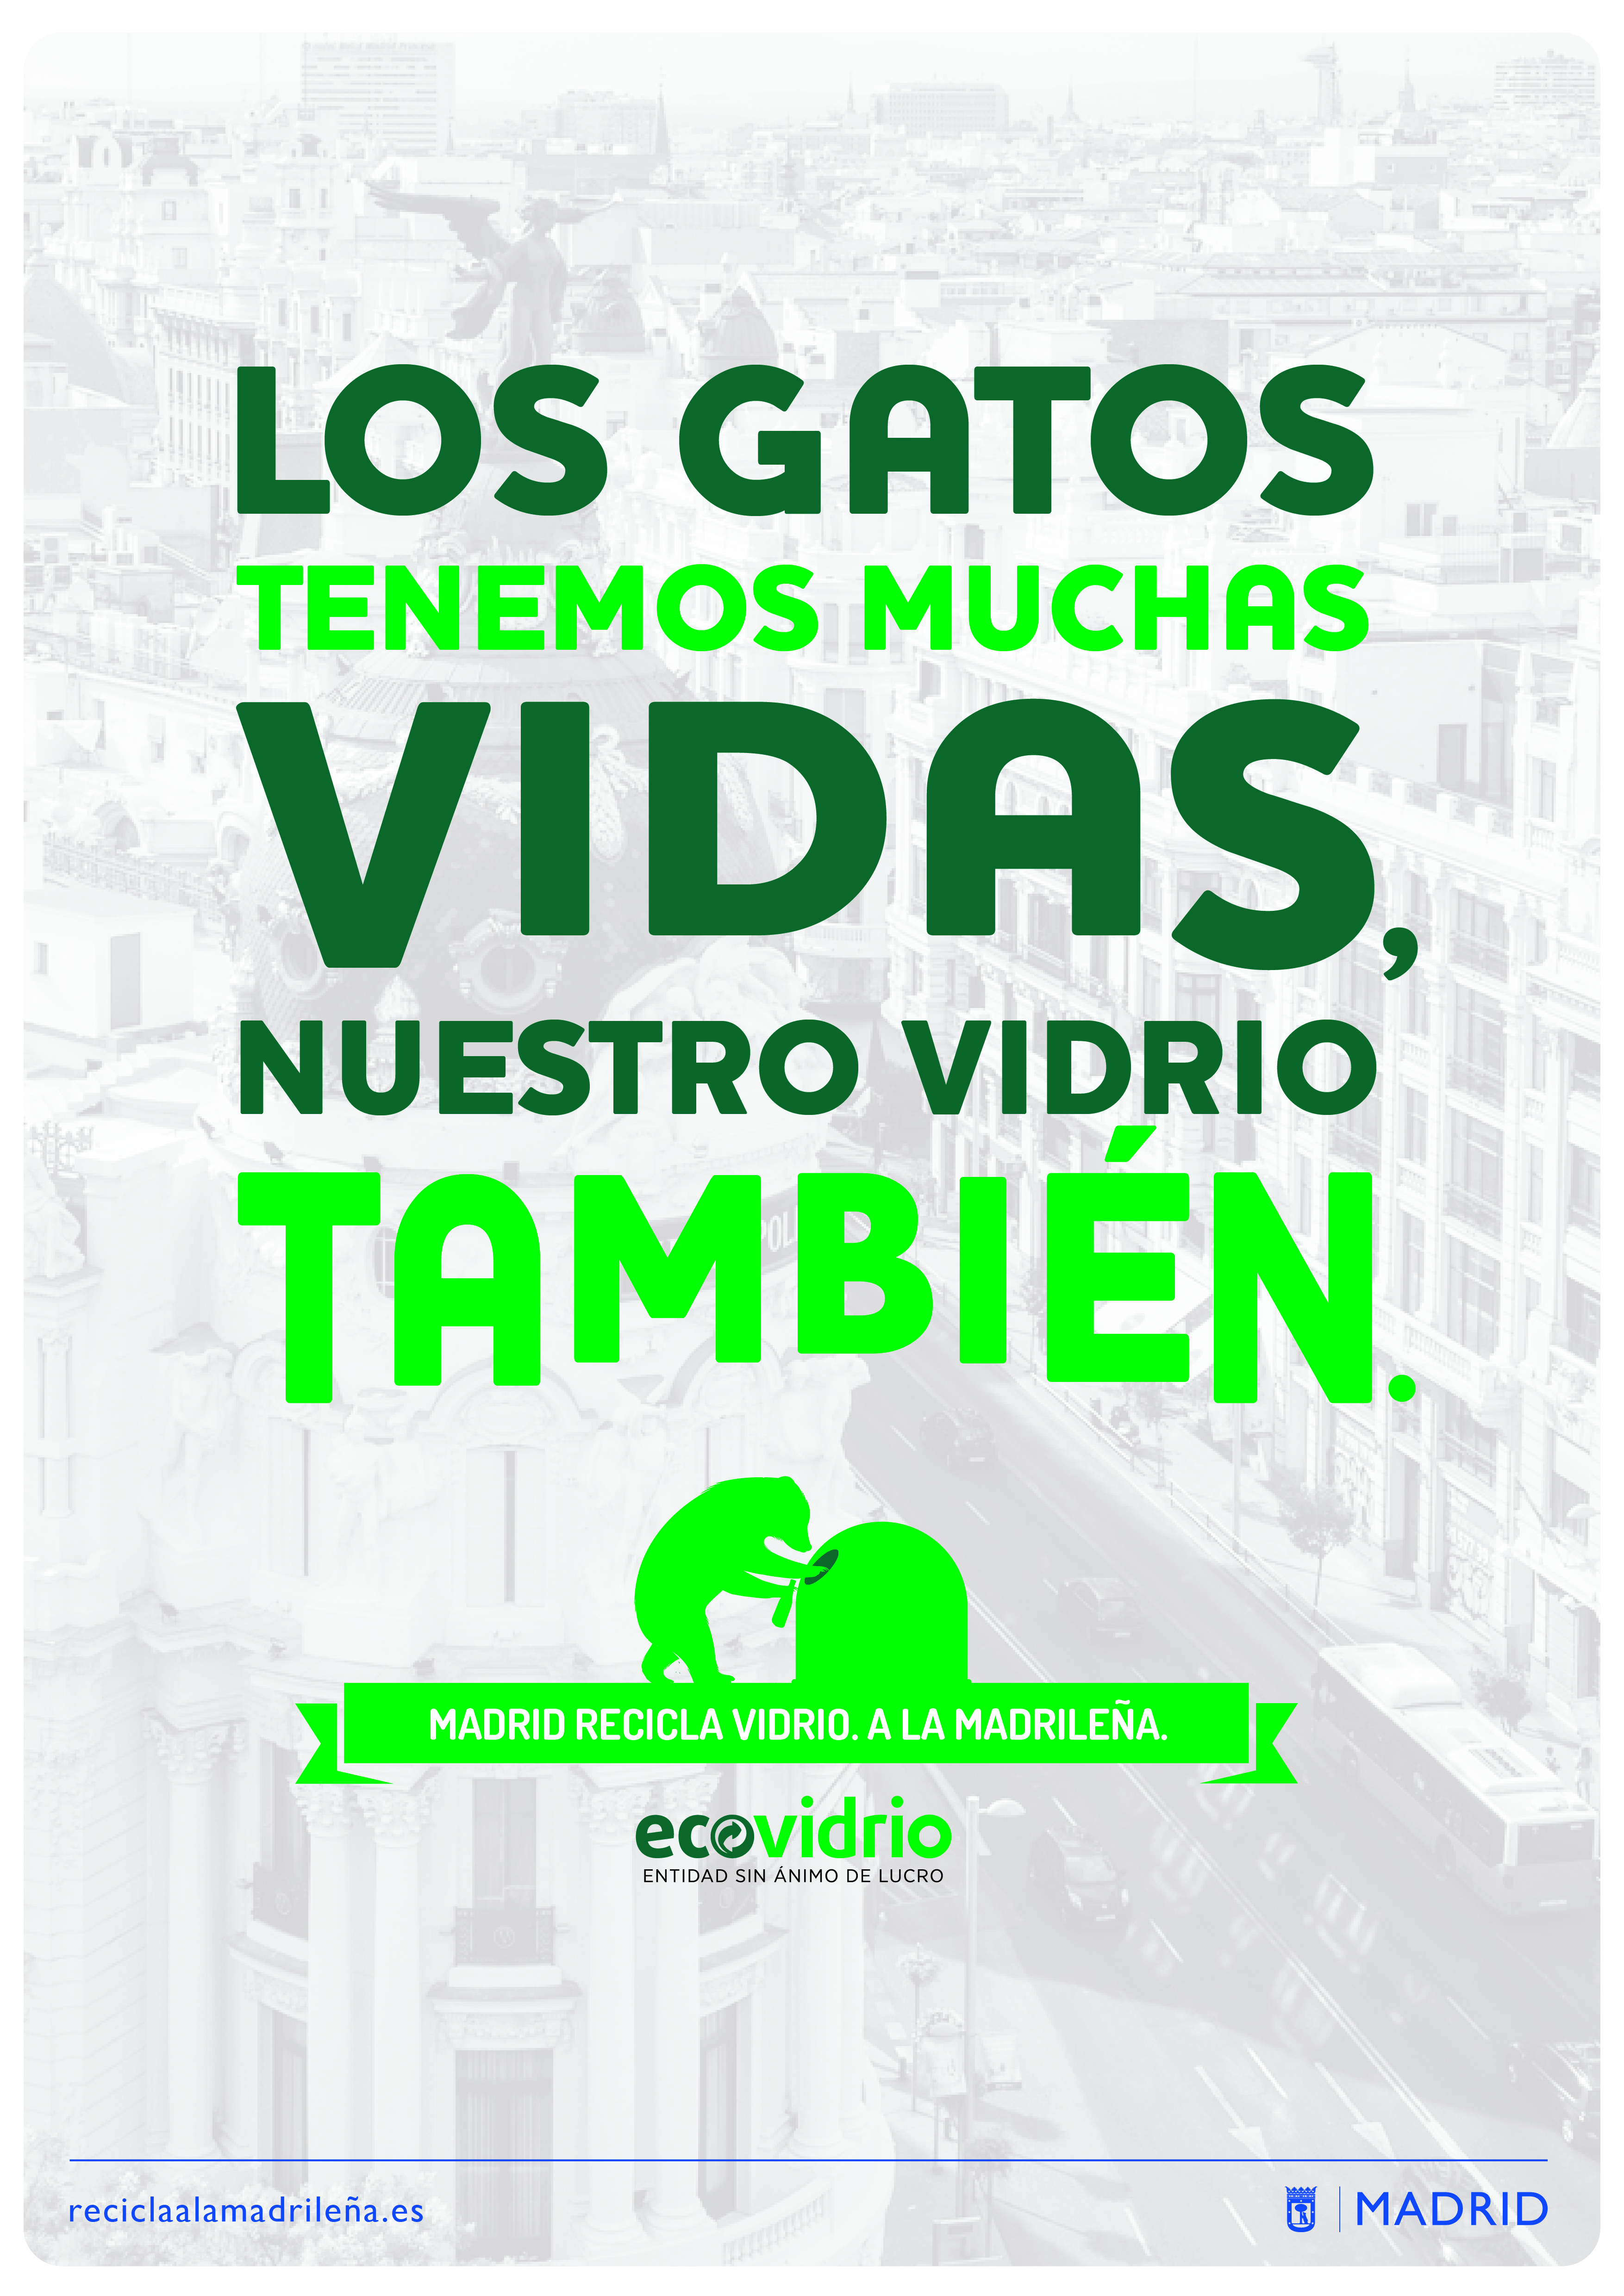 El Ayuntamiento de Madrid lanza la campaña 'Recicla a la madrileña' -  Ayuntamiento de Madrid